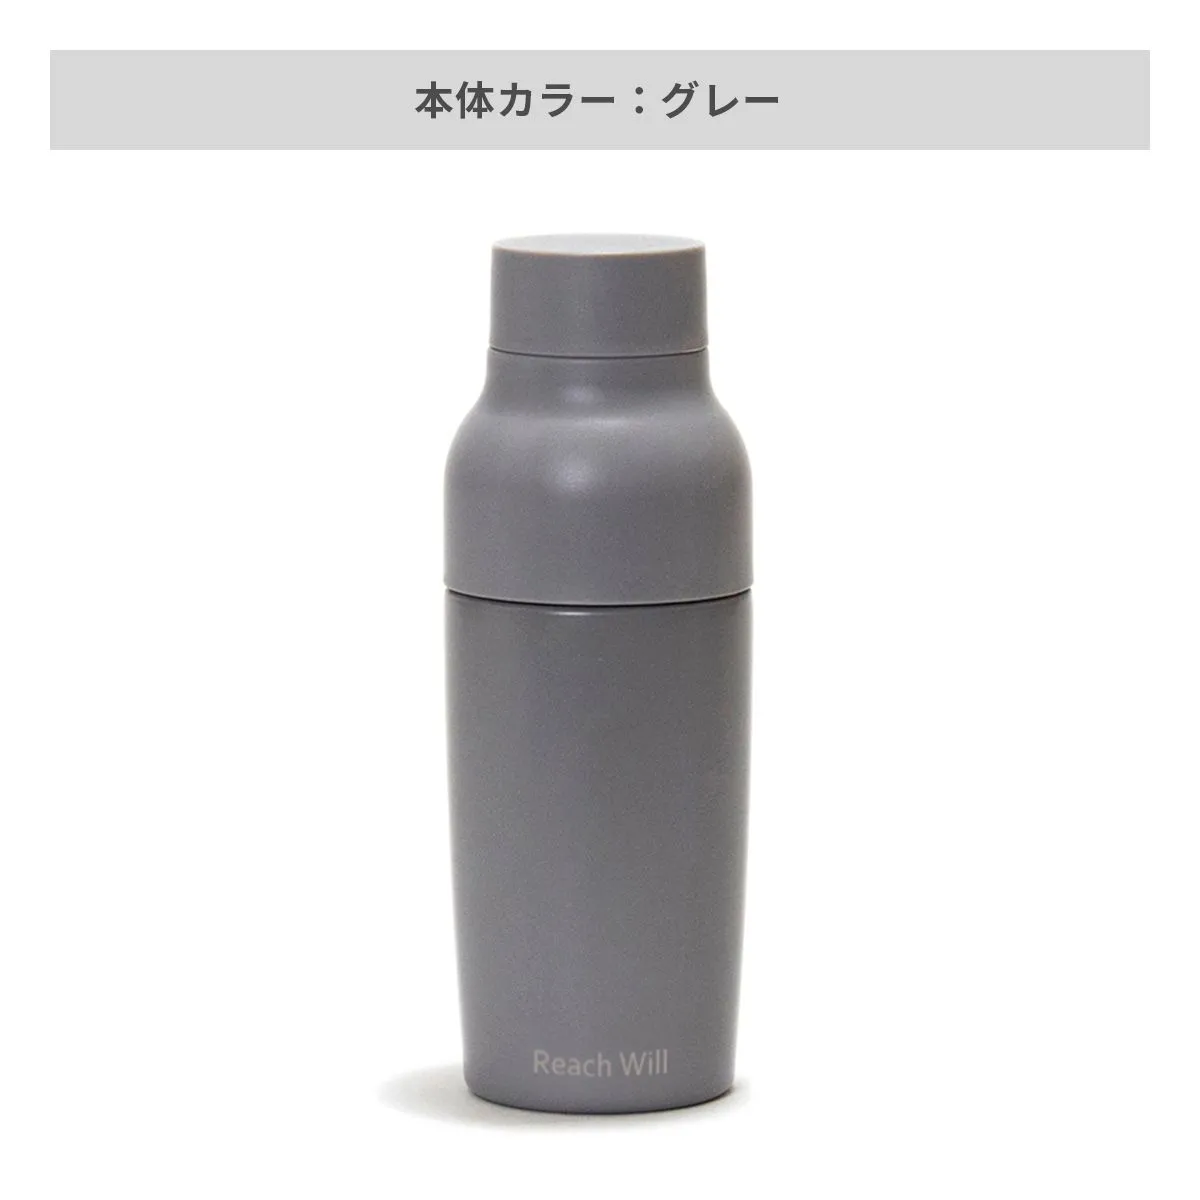 リーチウィル vaseステンレスマグボトル 380ml【オリジナルステンレスボトル / 回転シルク印刷】 画像5